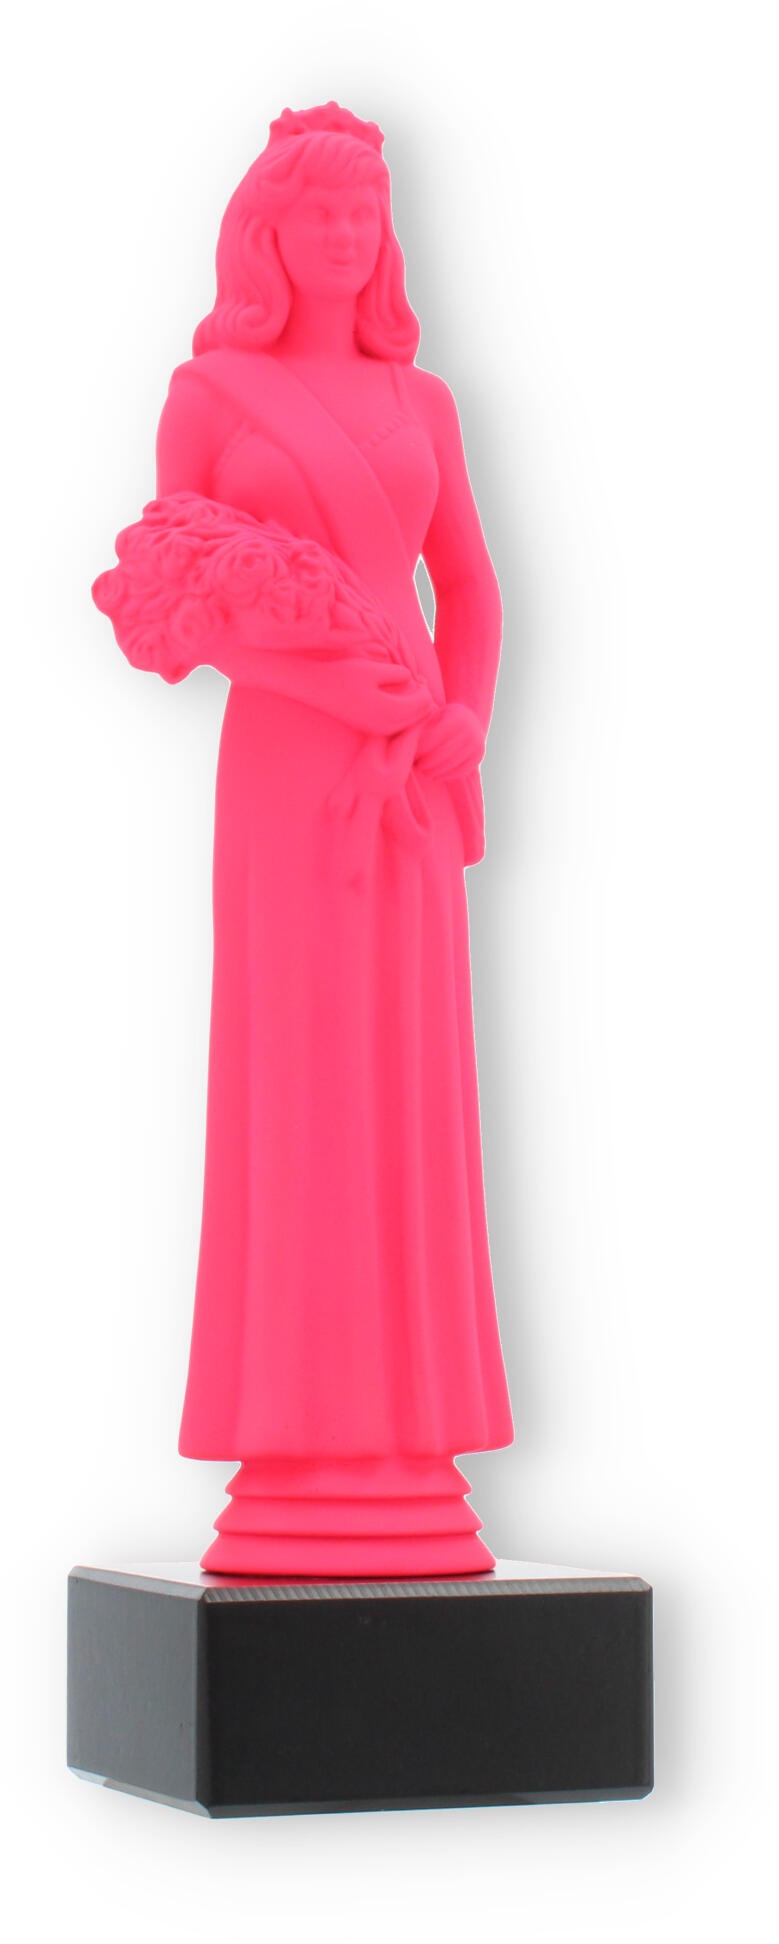 Pokal Kunststofffigur Schönheitskönigin pink auf schwarzem Marmorsockel 23,7cm